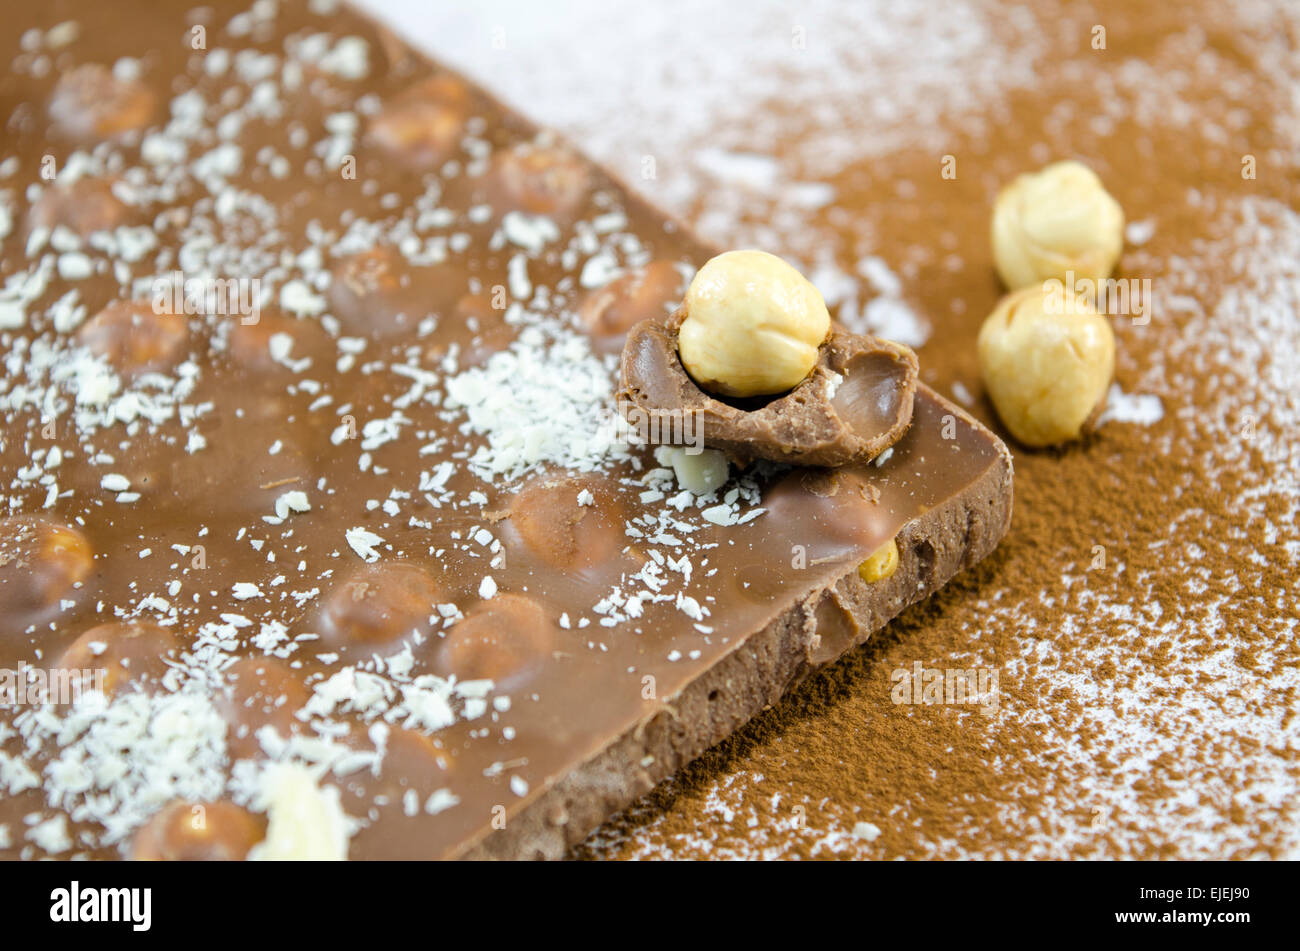 Ganzen Nüssen Schokolade auf einem Tisch mit Kakao und weißer Schokolade besprüht Stockfoto